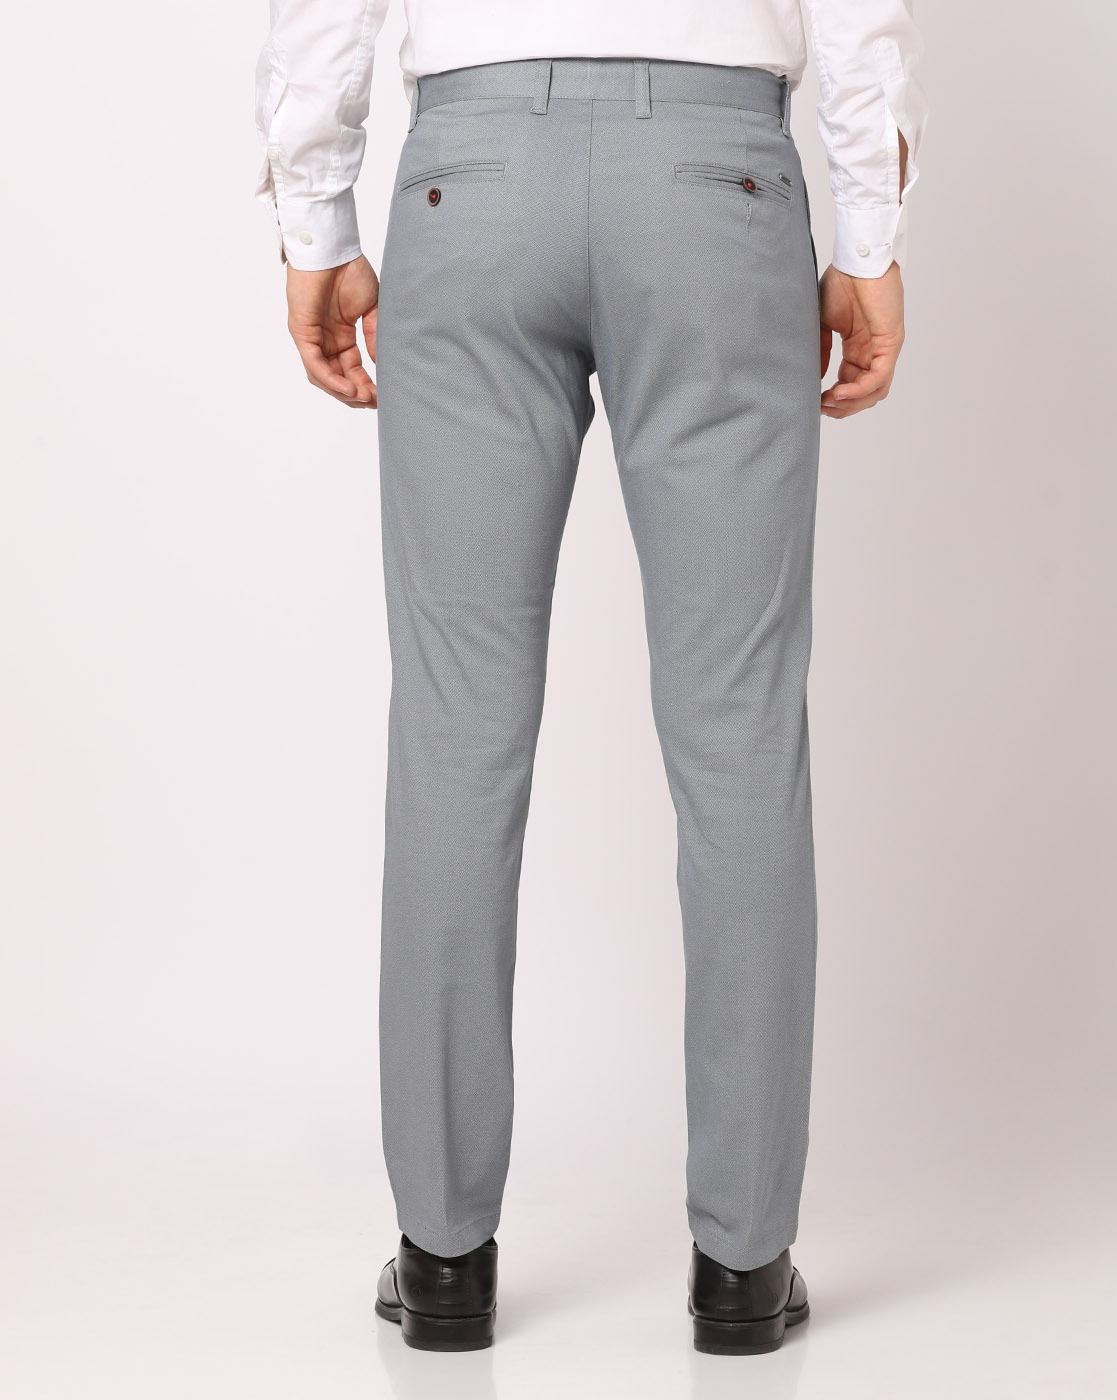 16 Black Blazer Grey Pants Styles For Men - The Versatile Man | Black shirt  outfits, Black blazer men, Grey pants men